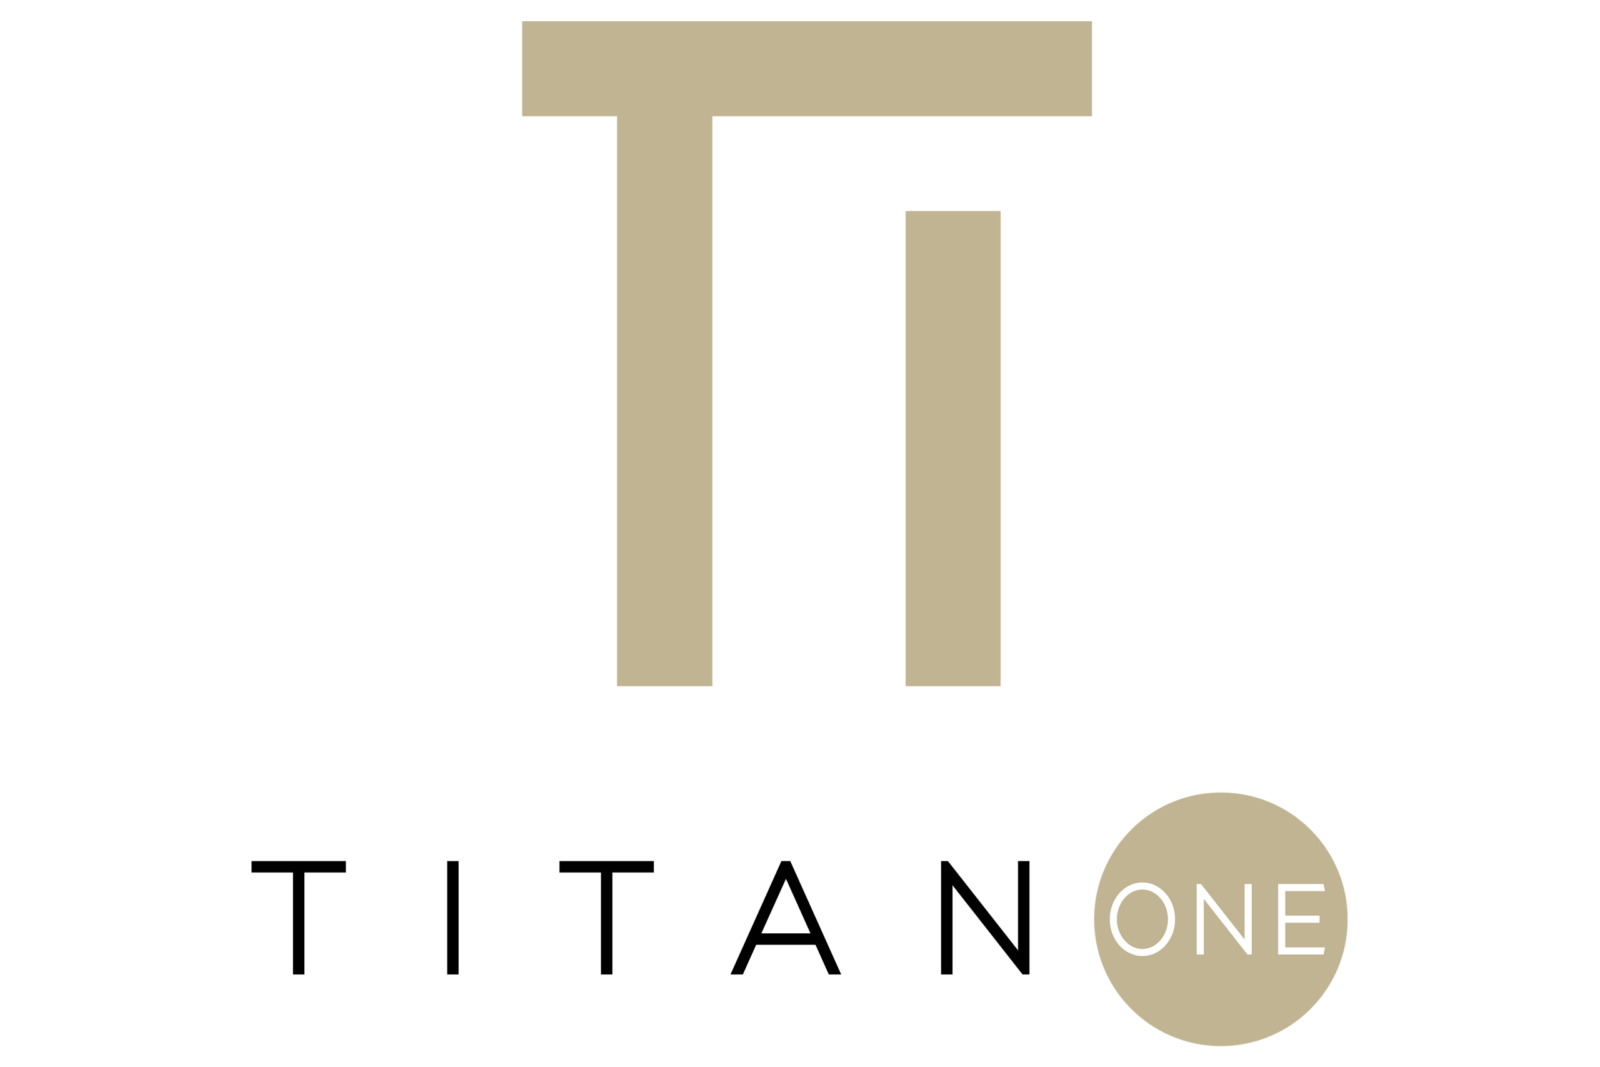 Titan builders & developers